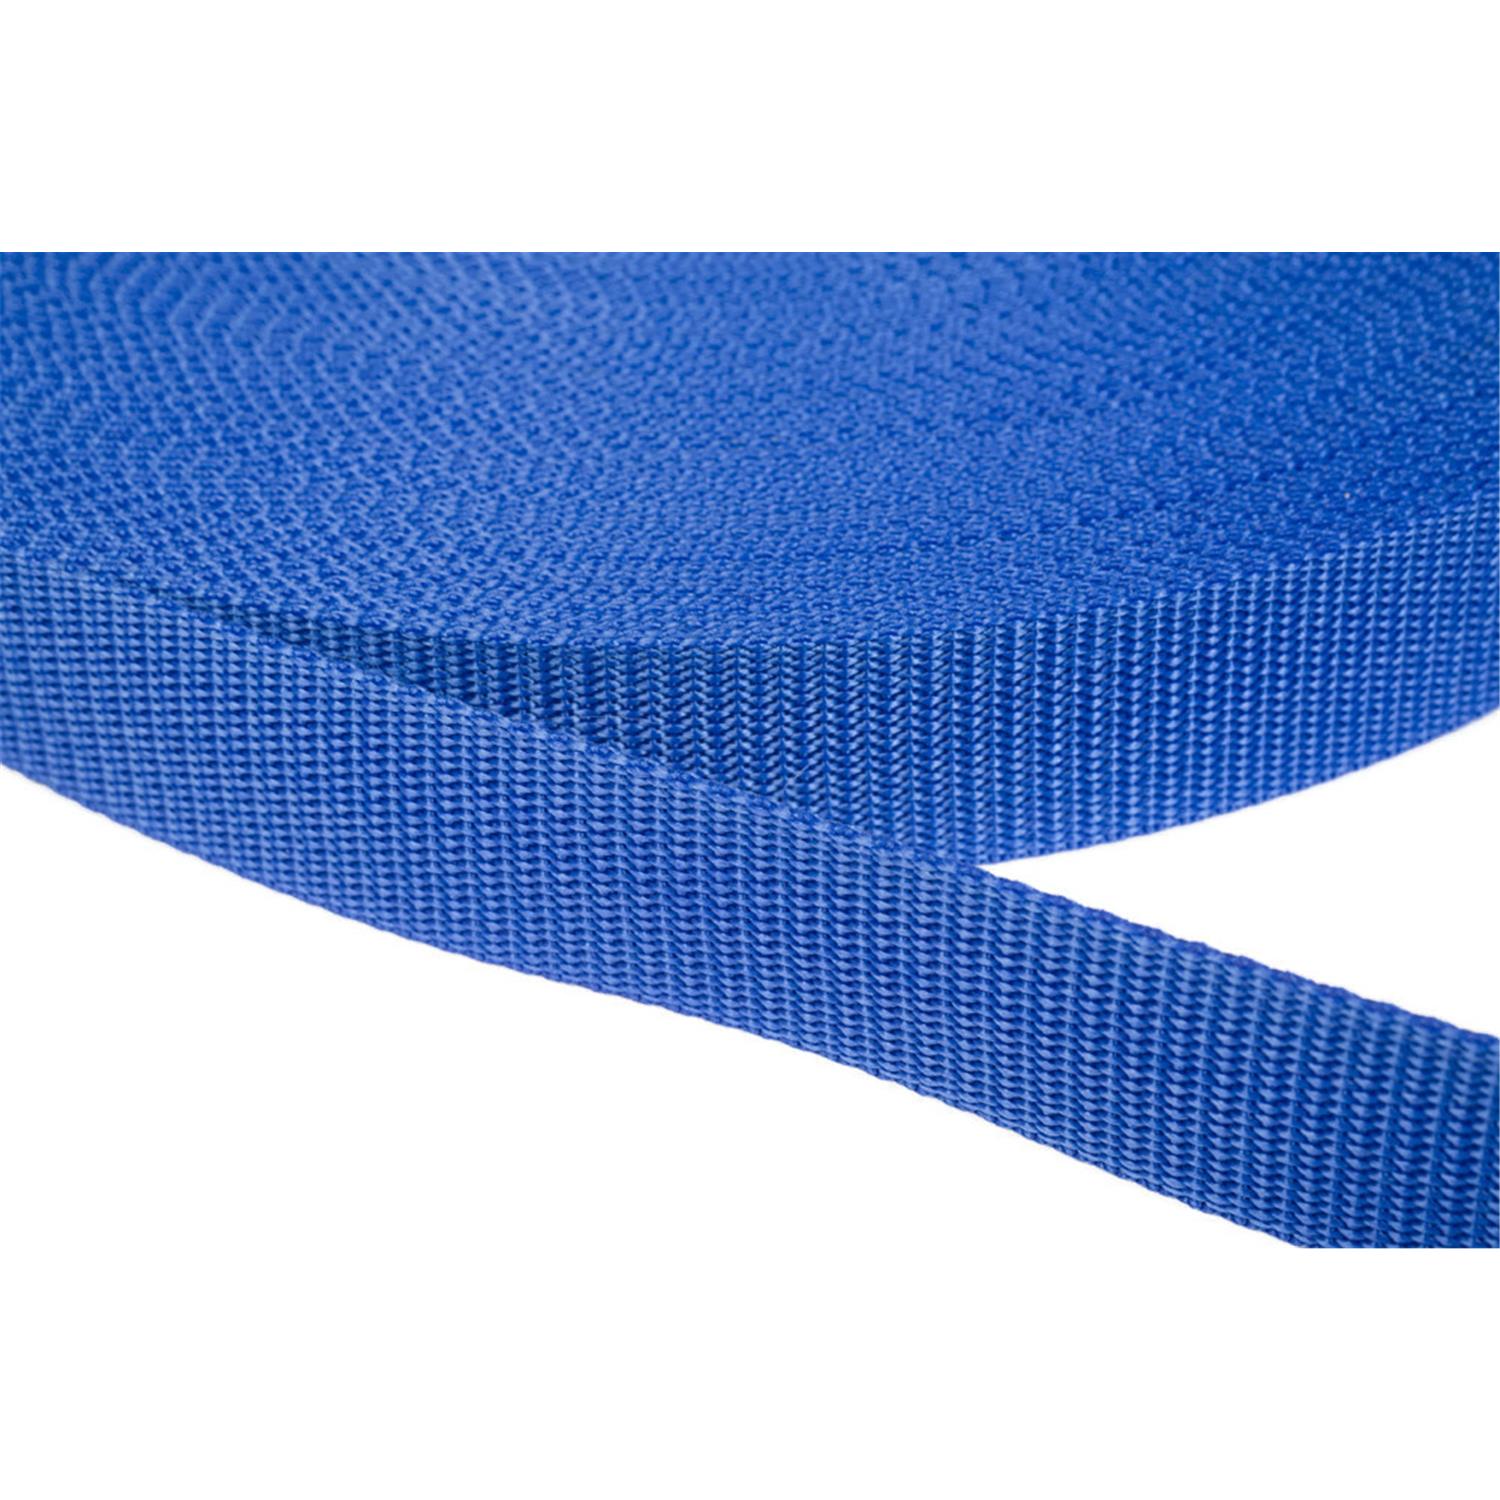 Gurtband 40mm breit aus Polypropylen in 41 Farben 26 - royalblau 6 Meter